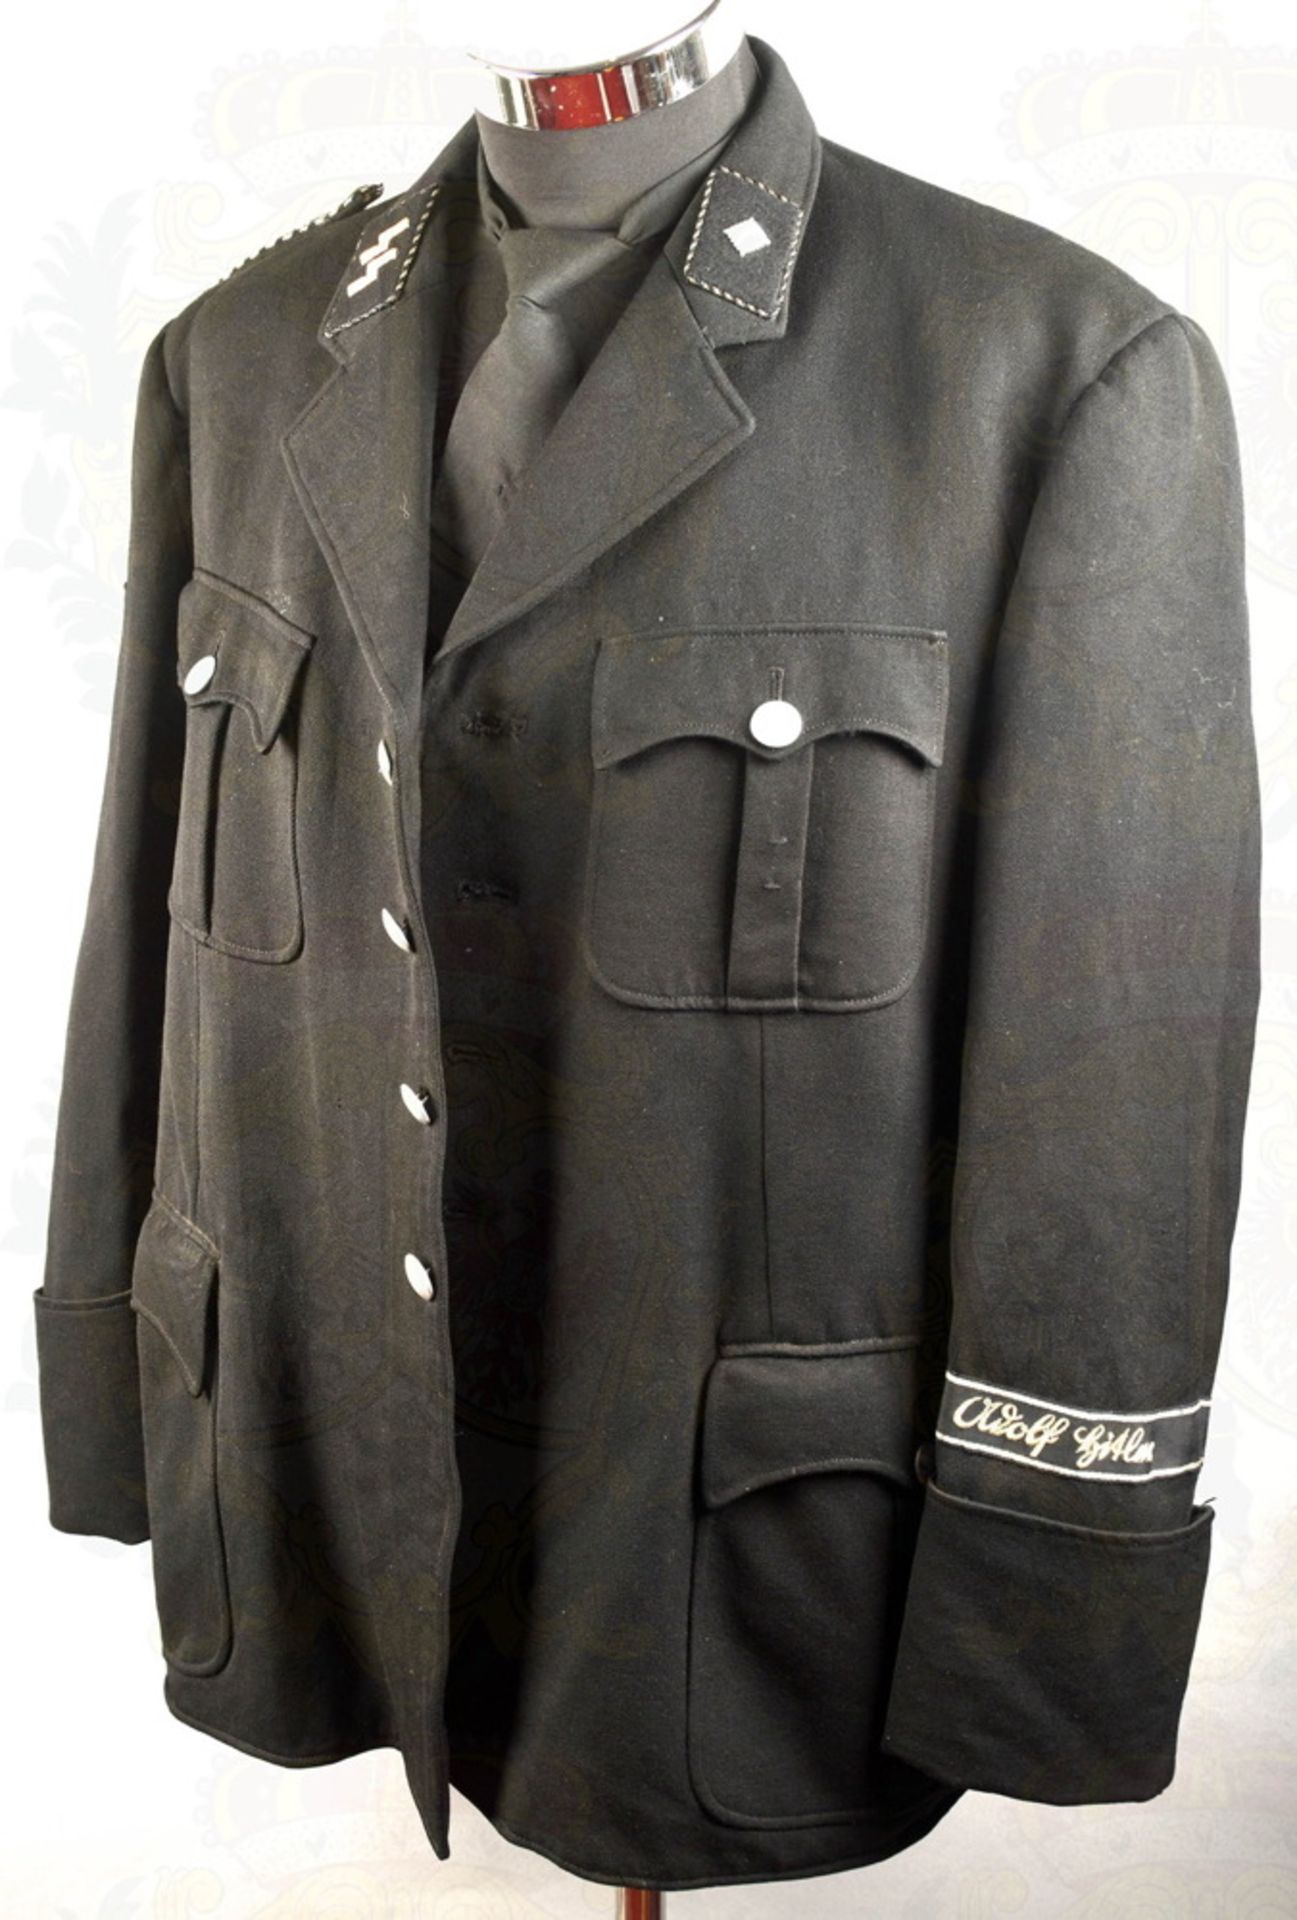 Tunic of a Leibstandarte SS Unterscharführer/SS NCO - Image 2 of 12